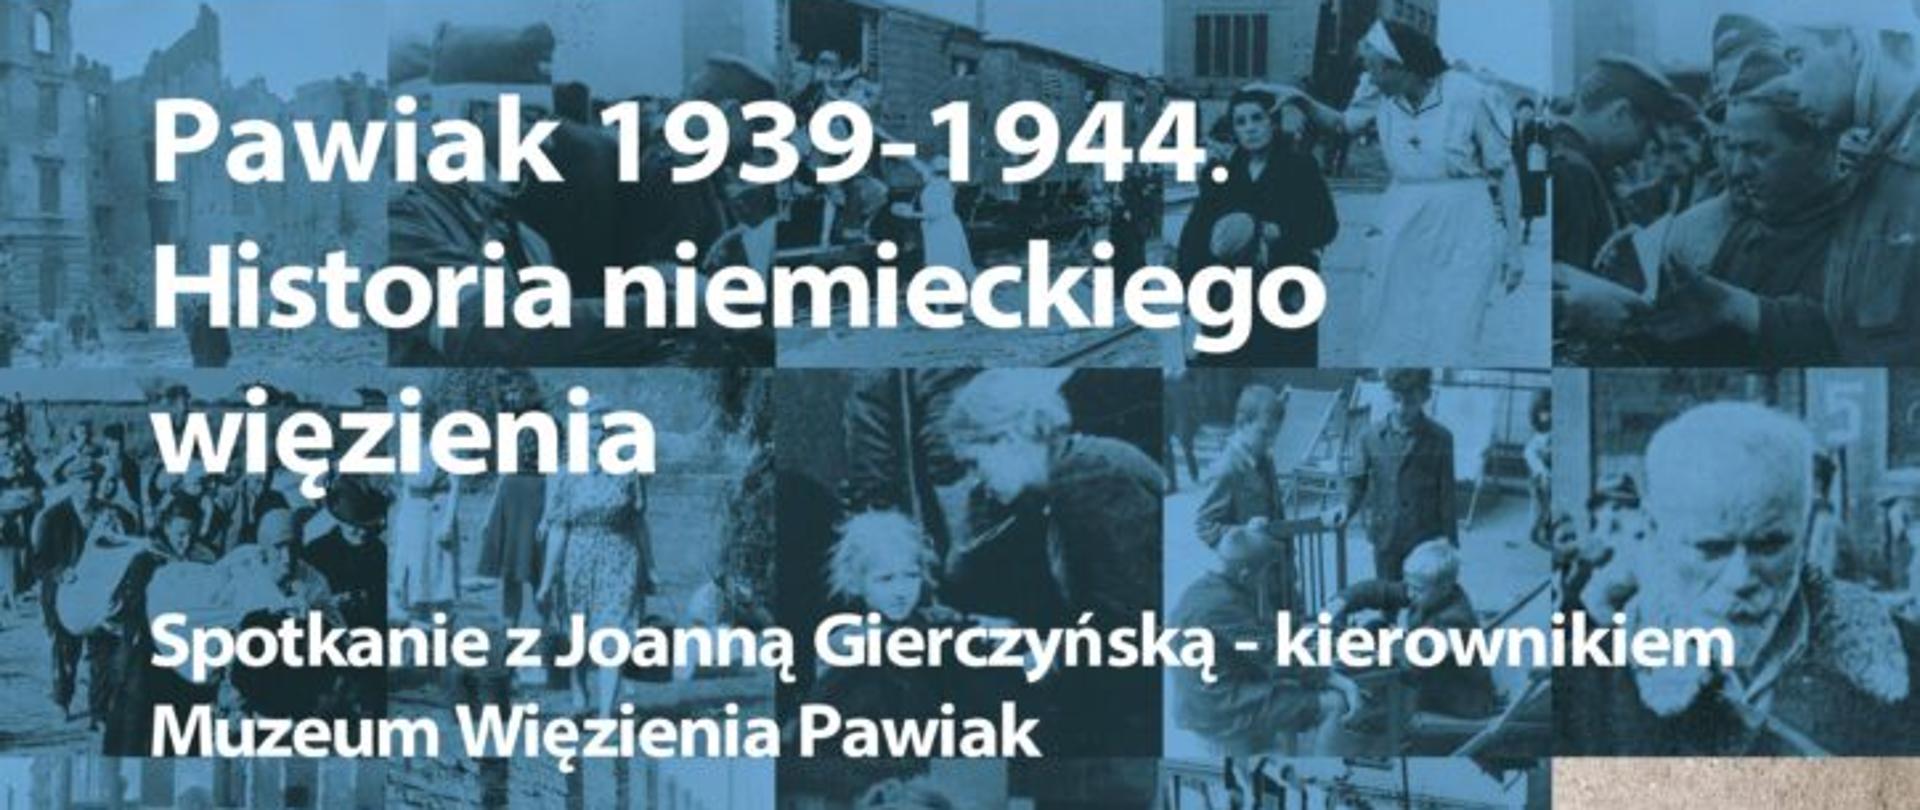 Pawiak 1939-1944. Historia niemieckiego więzienia – spotkanie z Joanną Gierczyńską - plakat